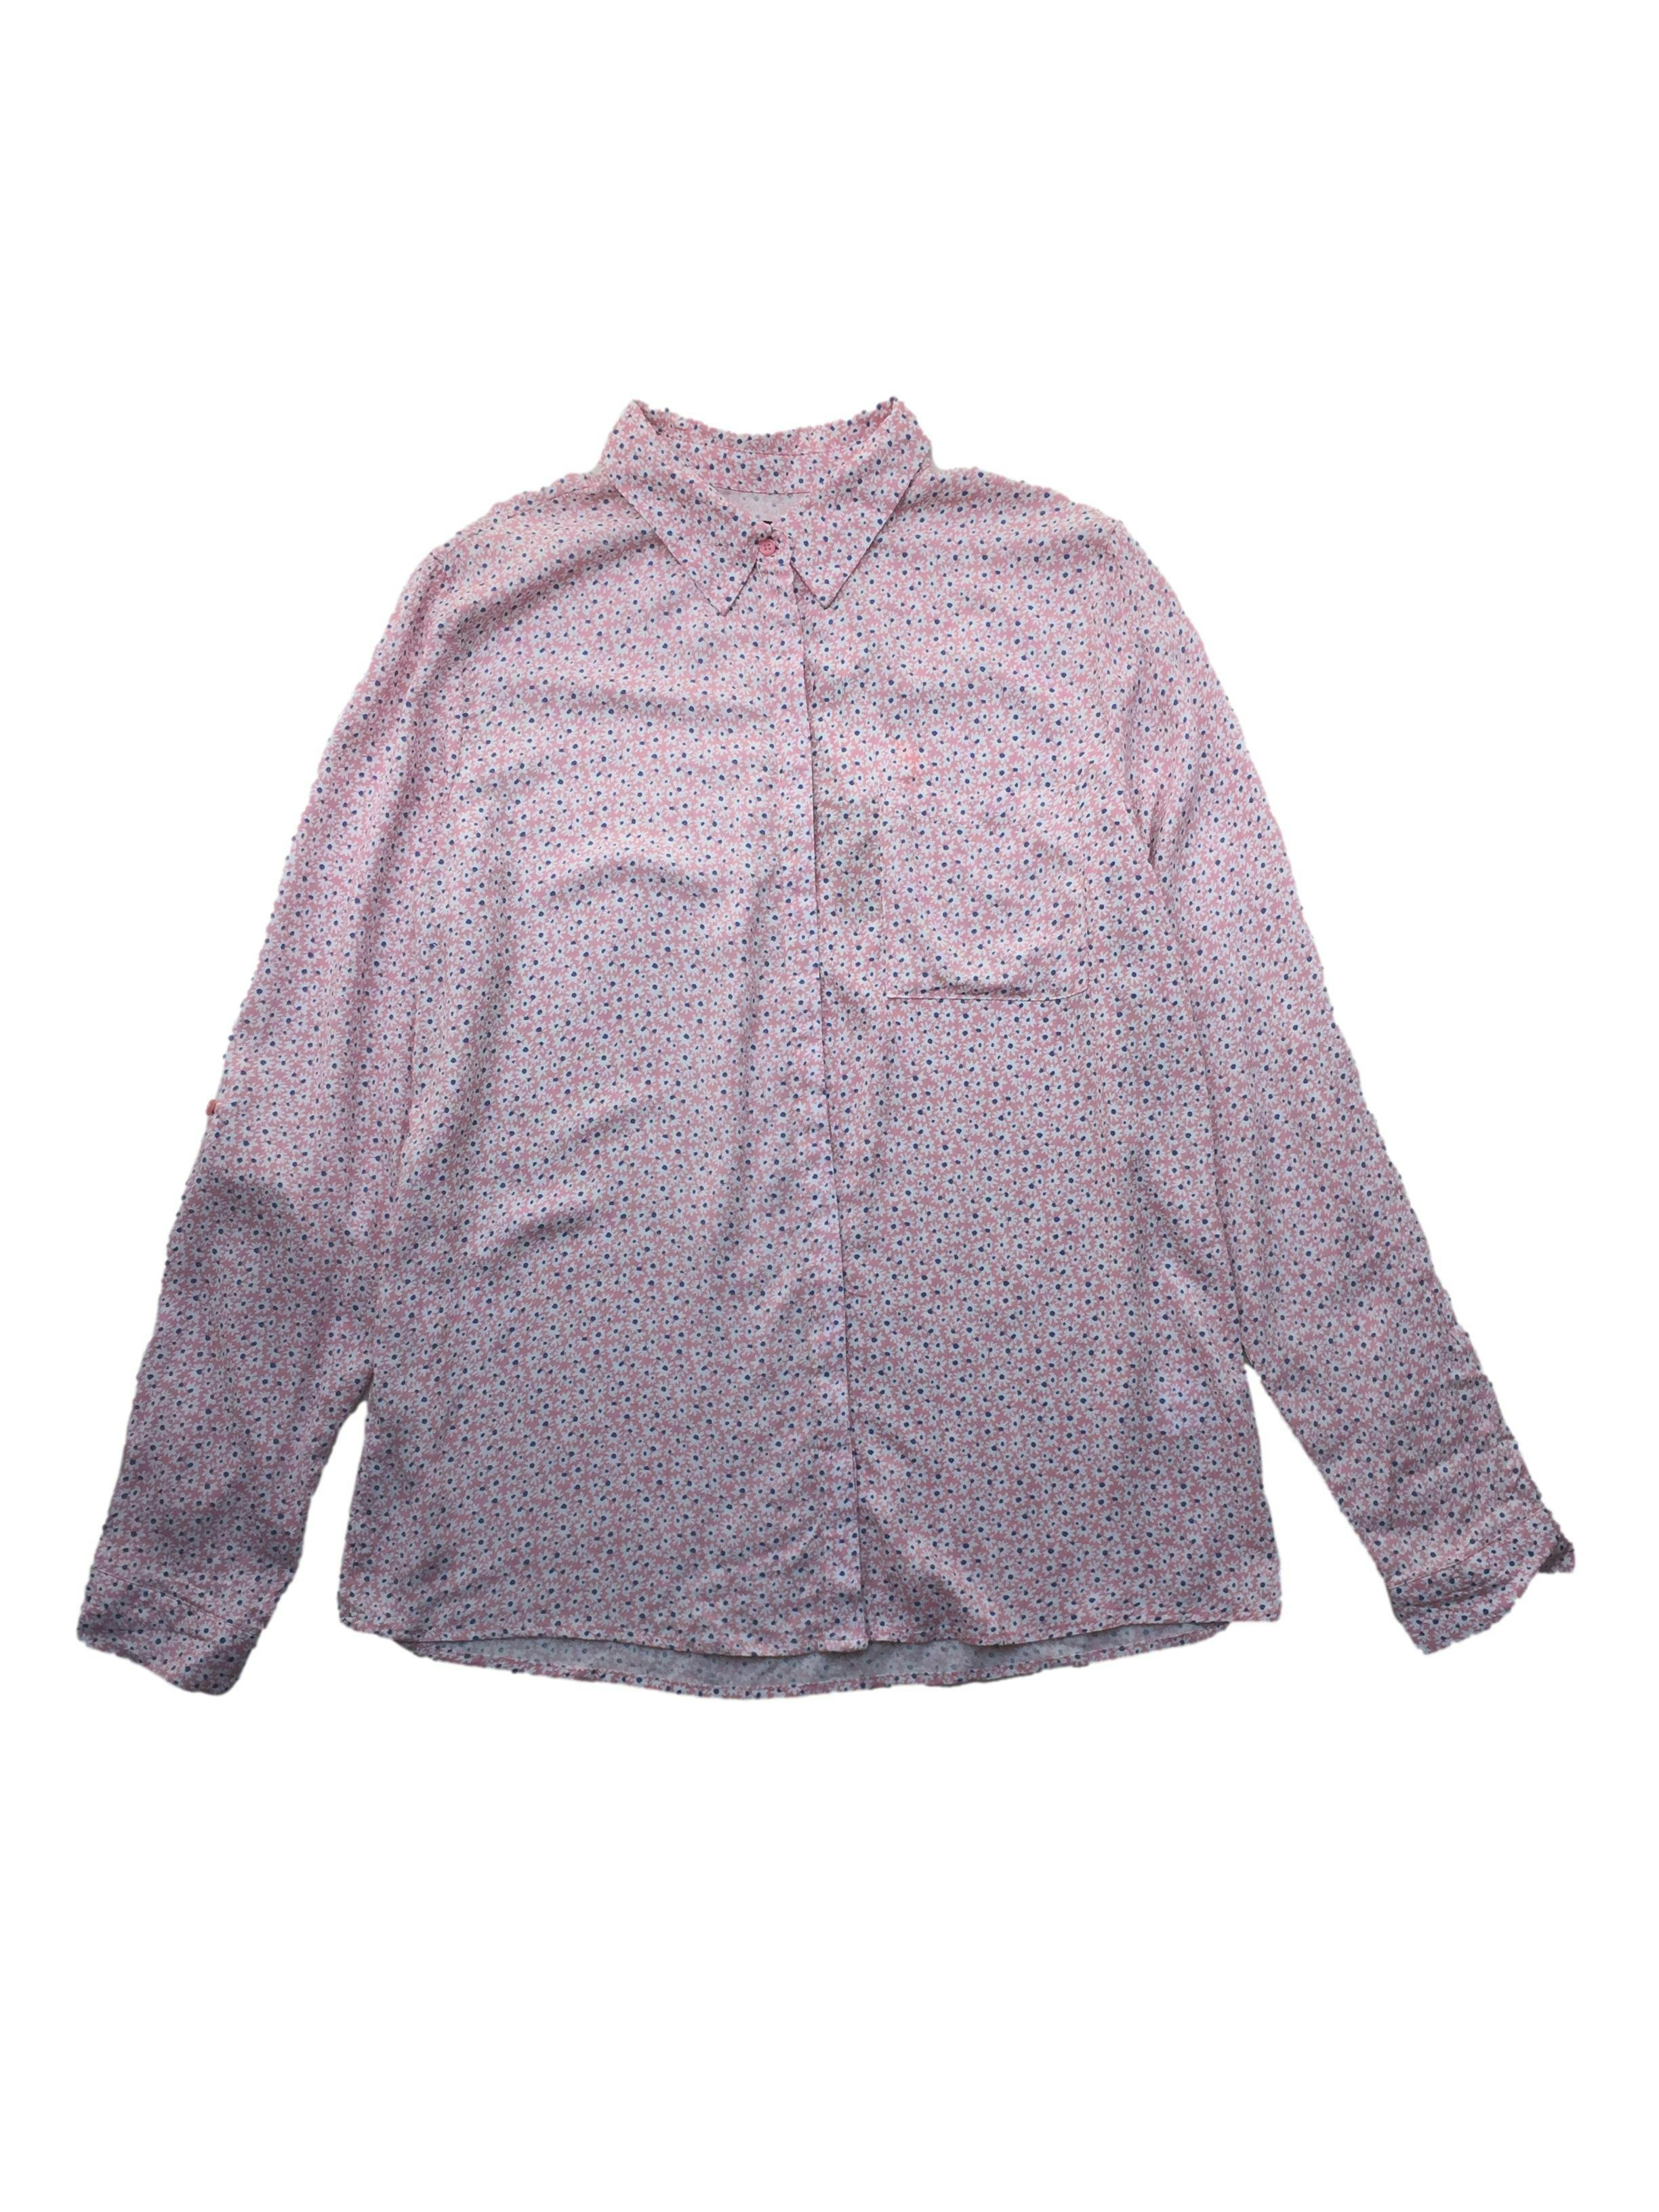 Blusa MTH rosada con flores blancas, botones delanteros, tela fresca. Busto: 108cm, Largo: 72cm. Nuevo con etiqueta.